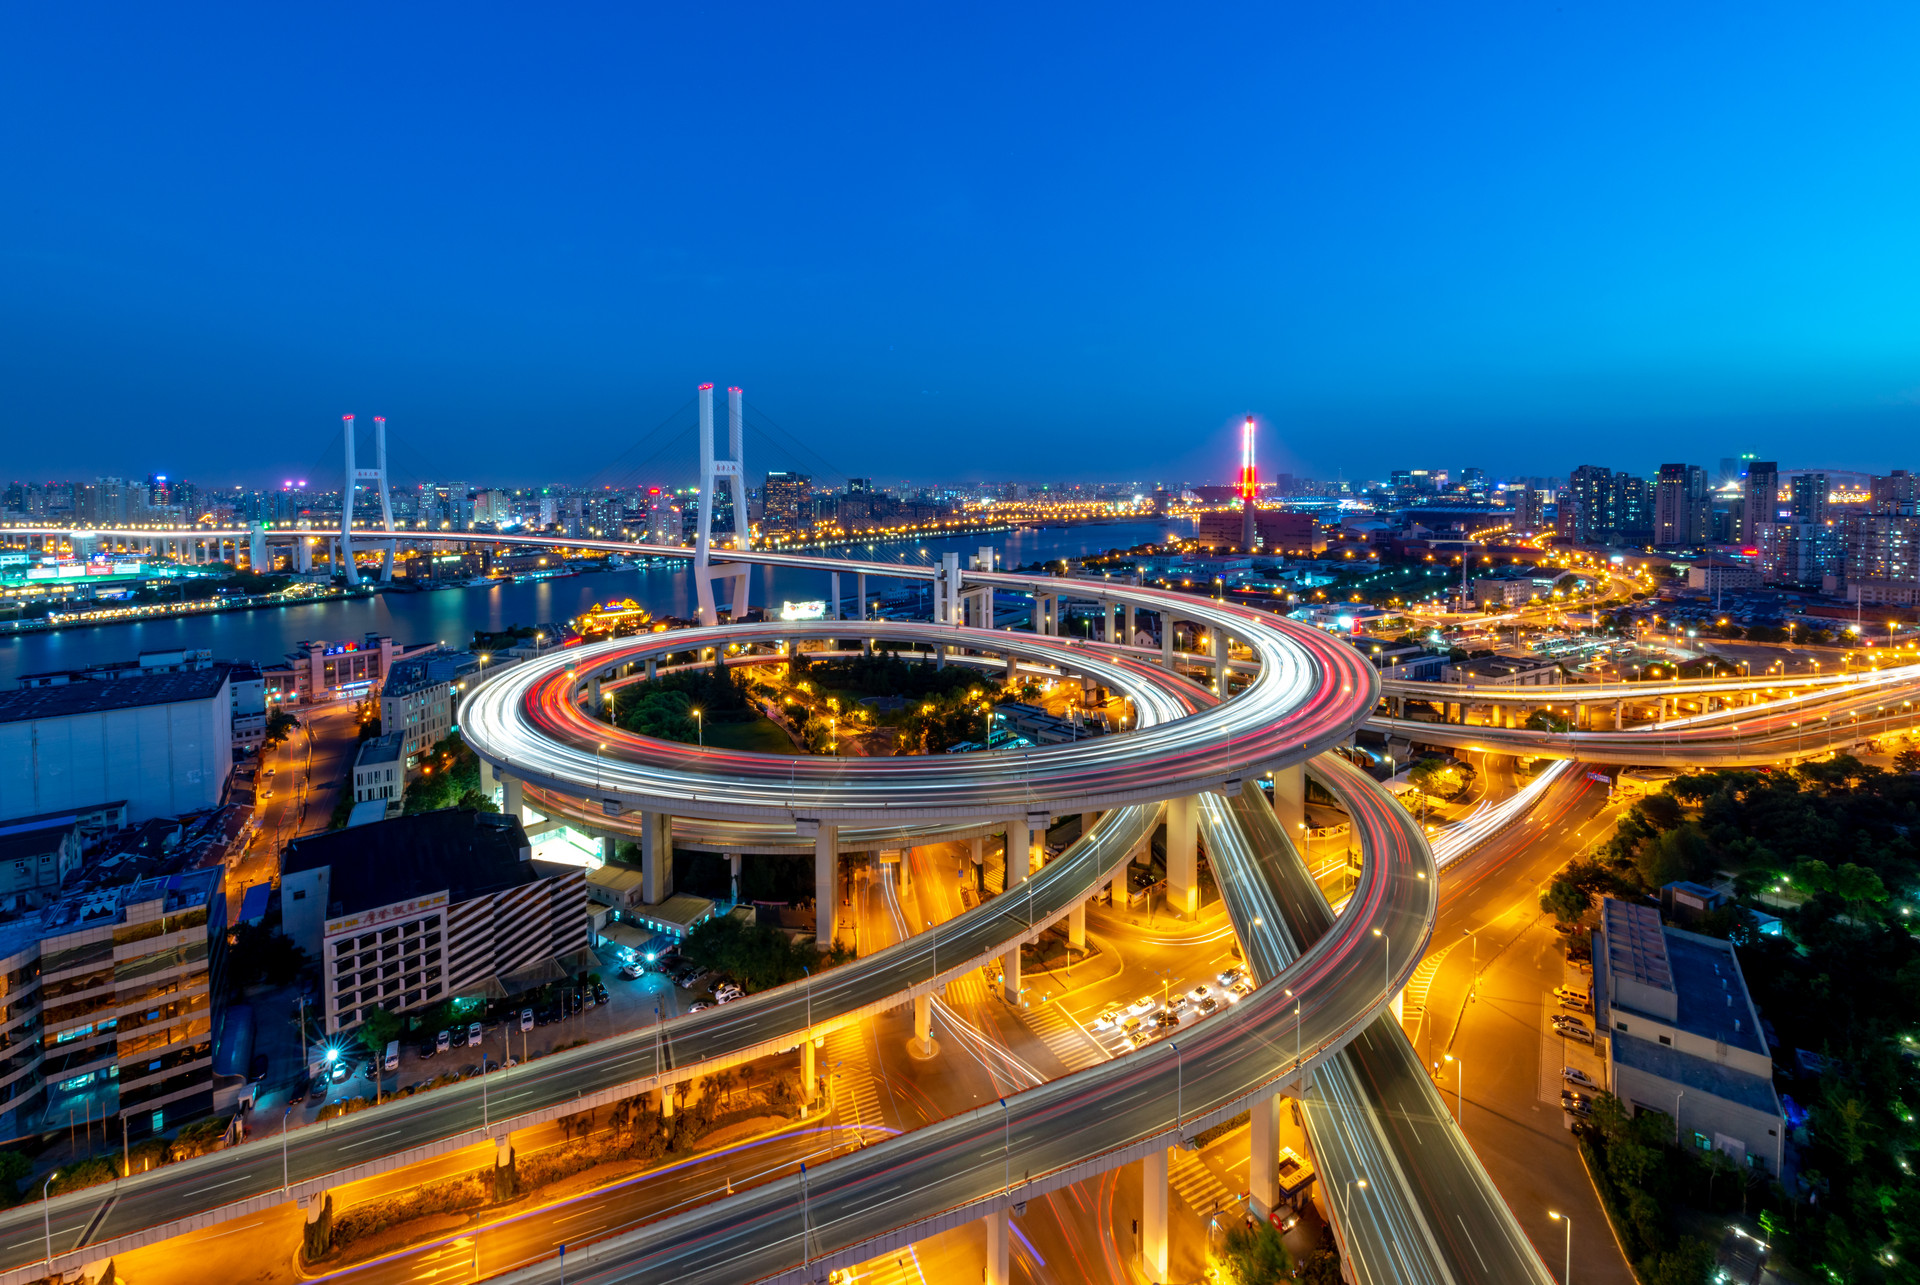 中国东部沿海地区城市经济韧性的空间差异及其产业结构解释